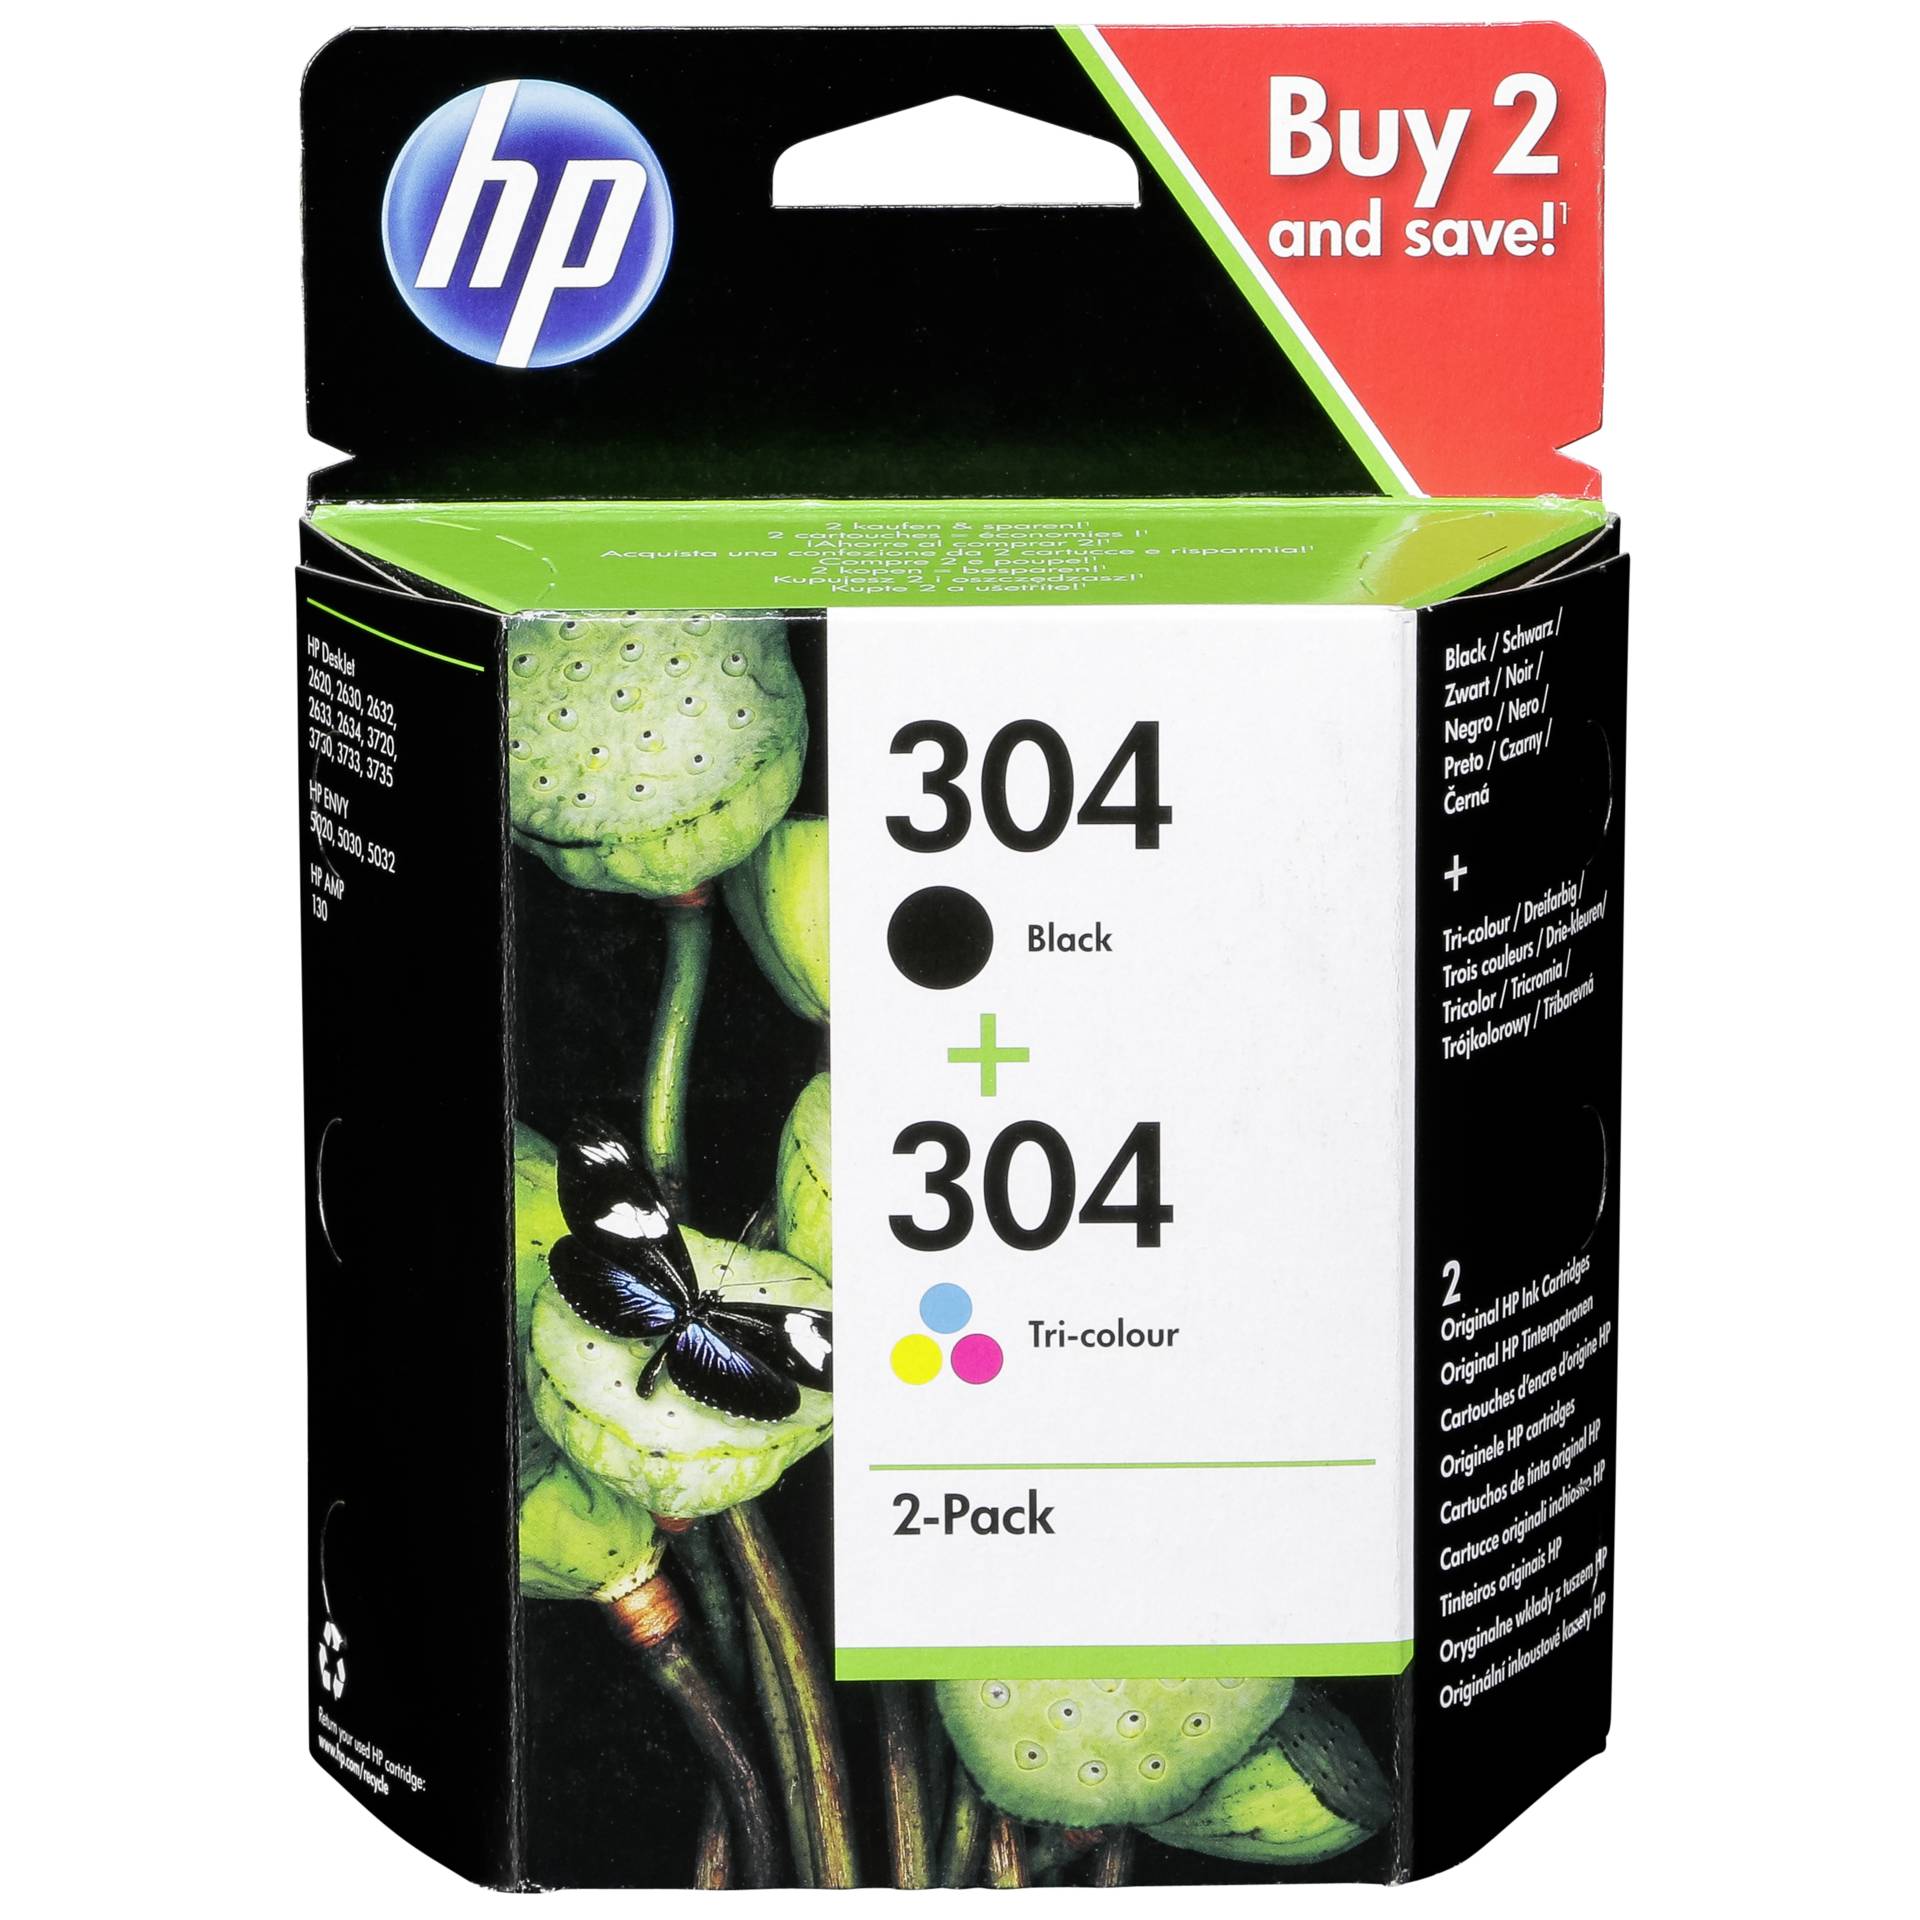 HP Druckkopf mit Tinte 304 Multipack 120 Seiten schwarz, 100 Seiten dreifarbig